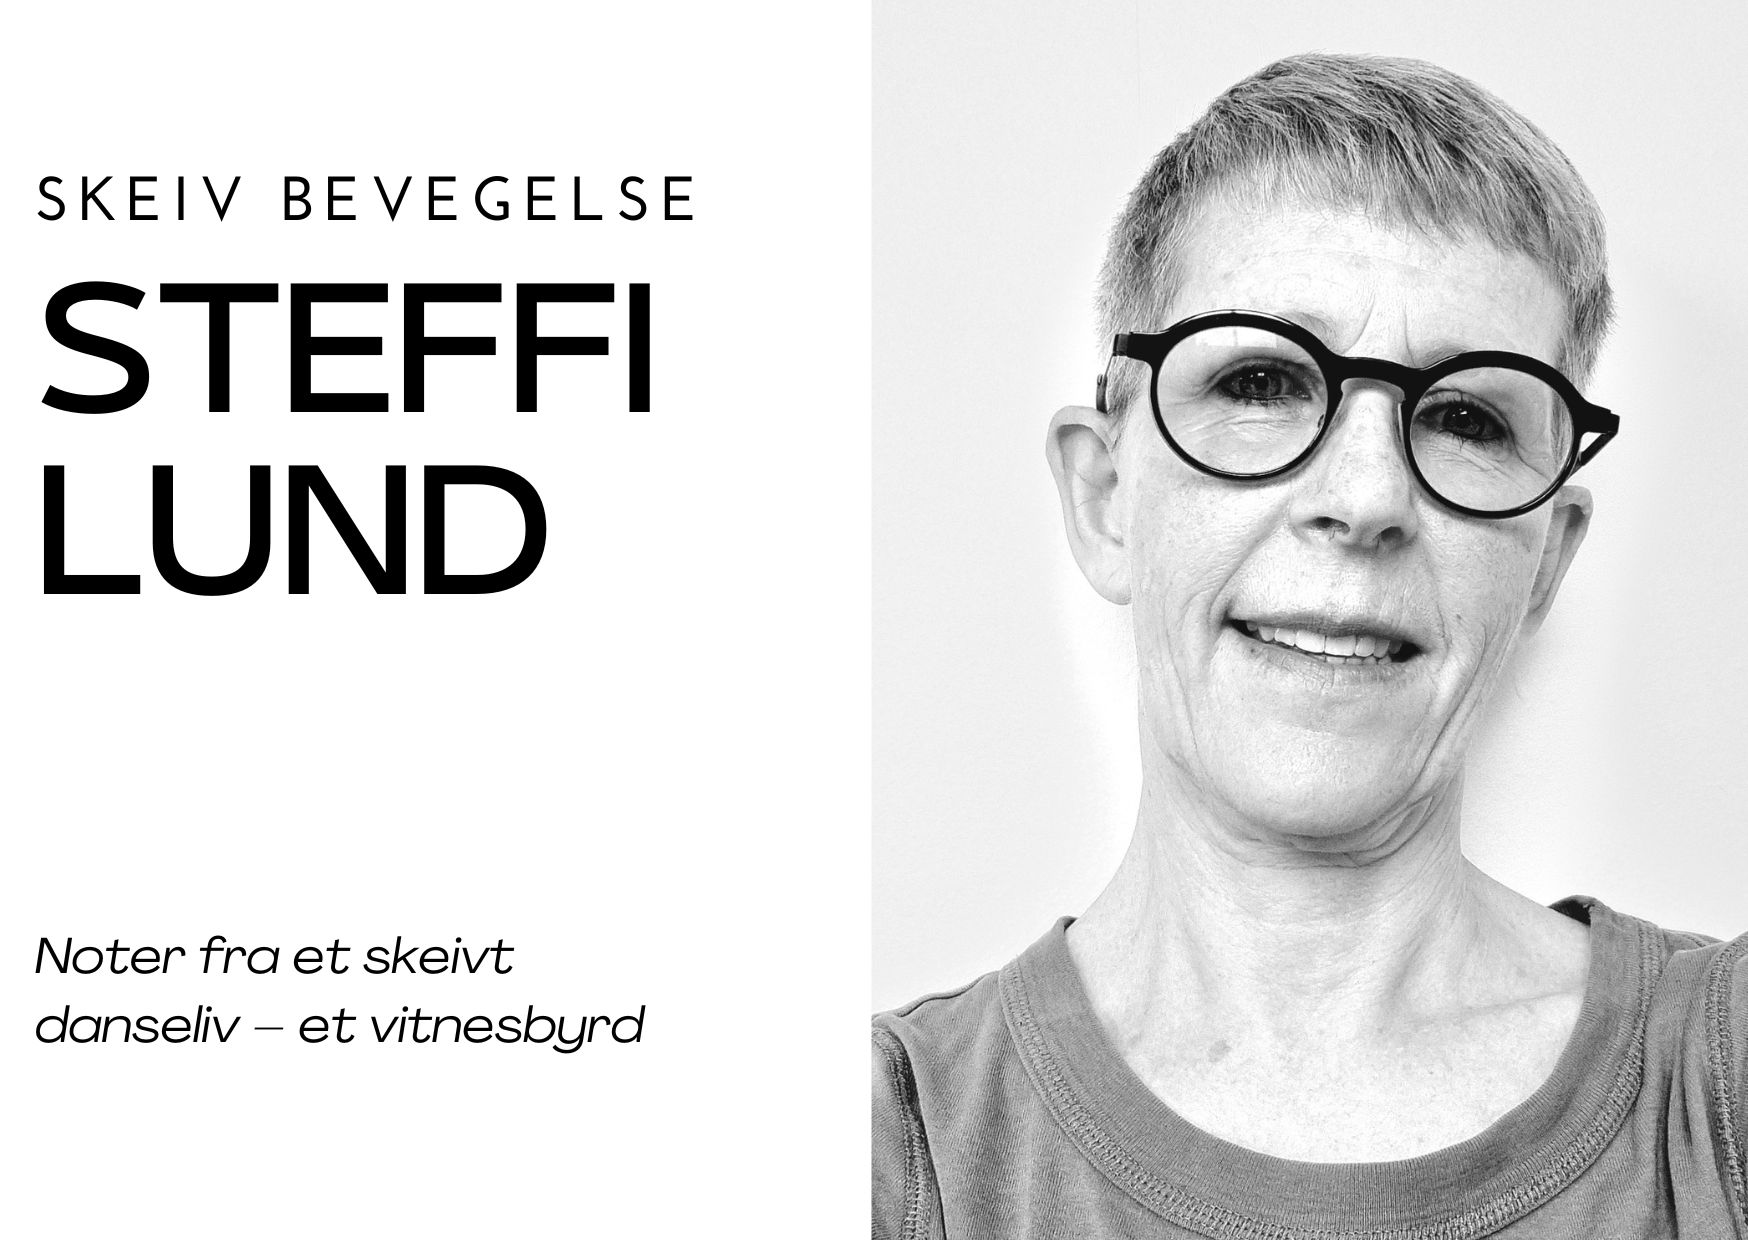 Steffi Lund